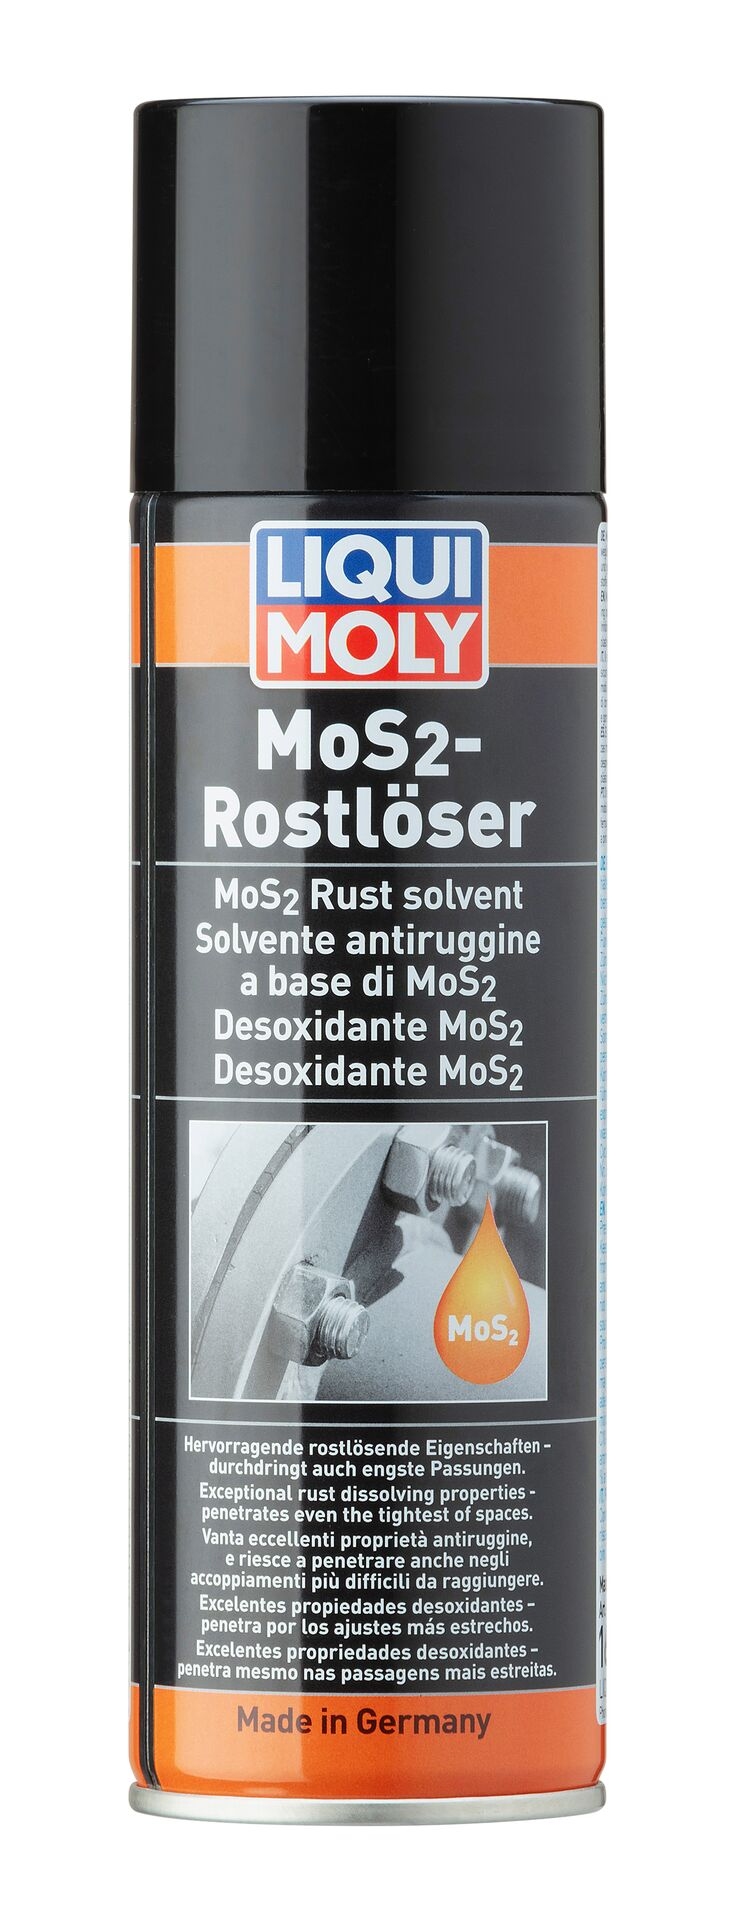 Liqui Moly 4061659030103 1x LIQUI MOLY 1614 MoS2-Rostlöser 300 ml